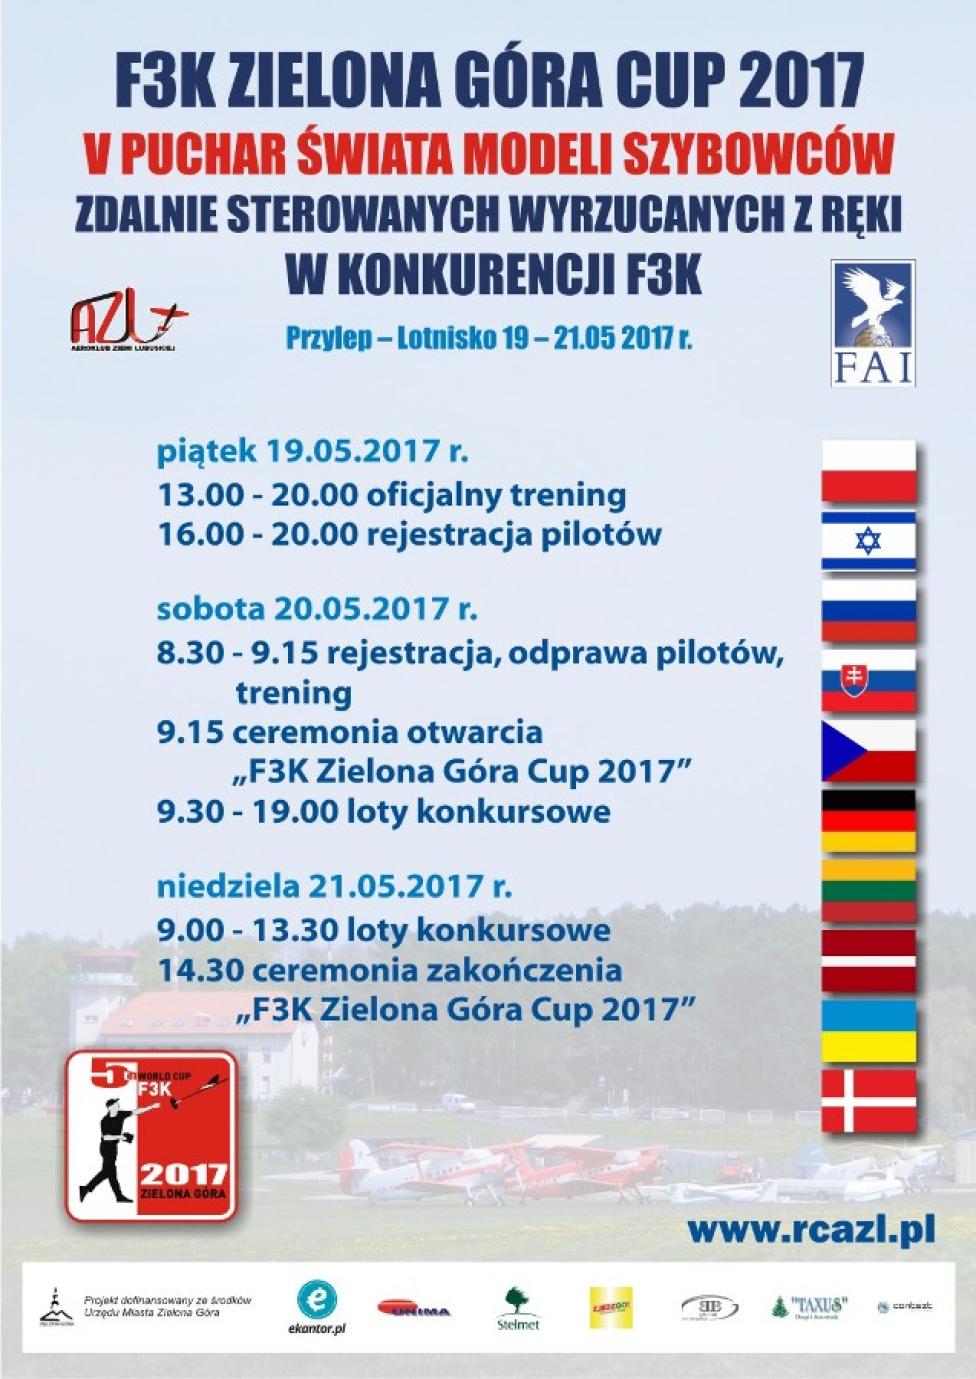 V Puchar Świata F3K w Przylepie (fot. Aeroklub Ziemi Lubuskiej)